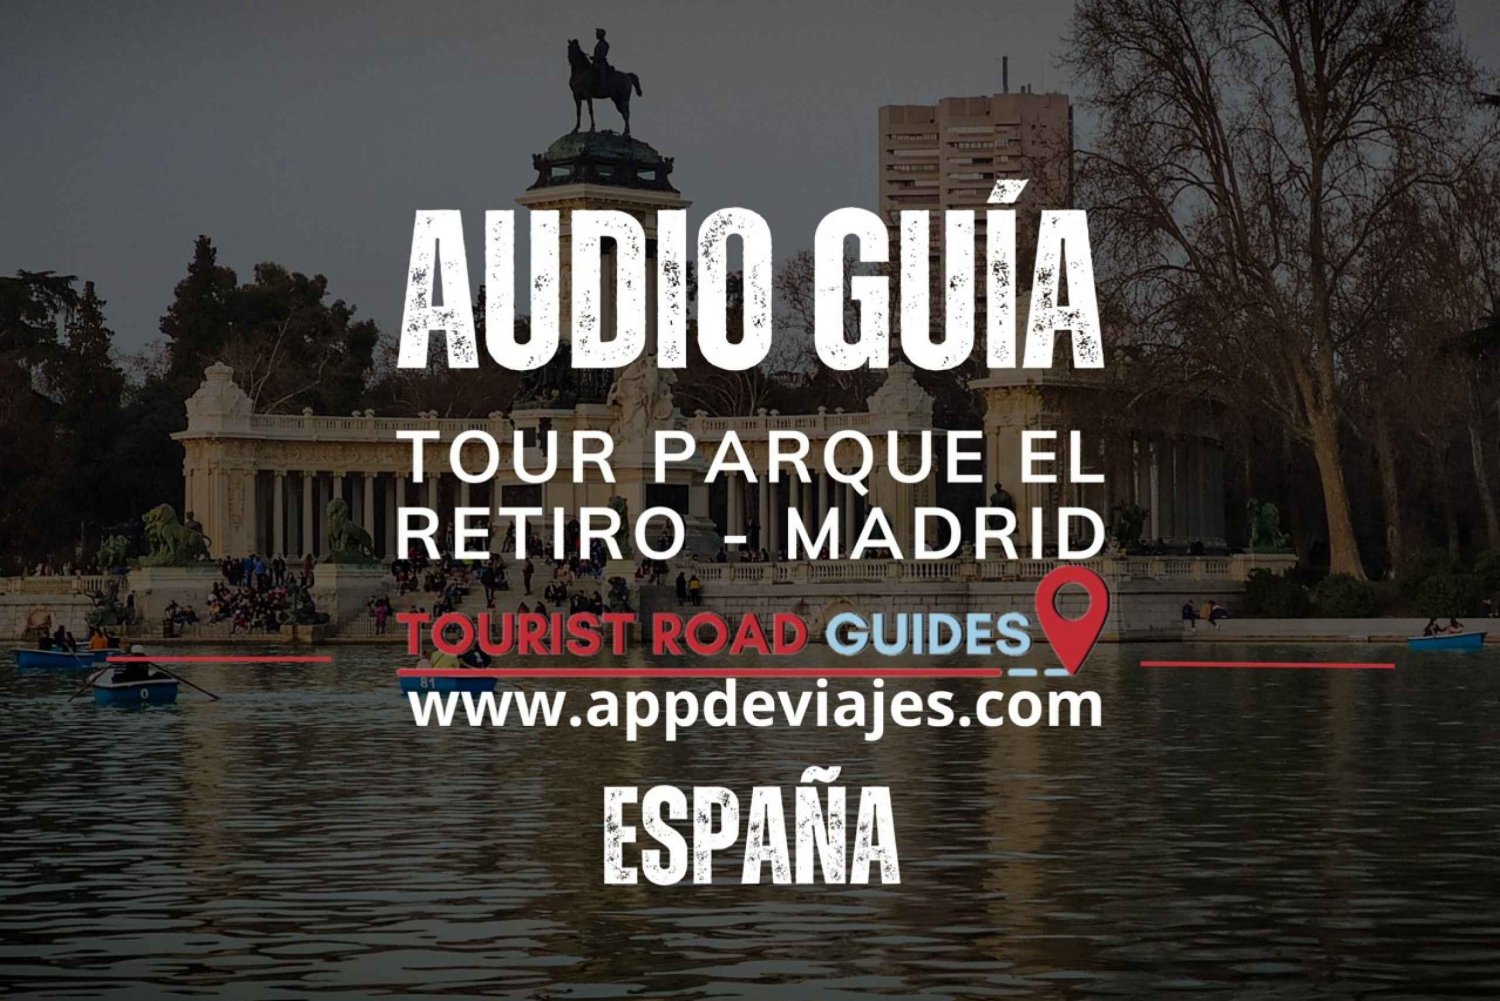 Tour Parque del Retiro - Madrid tour guiado app